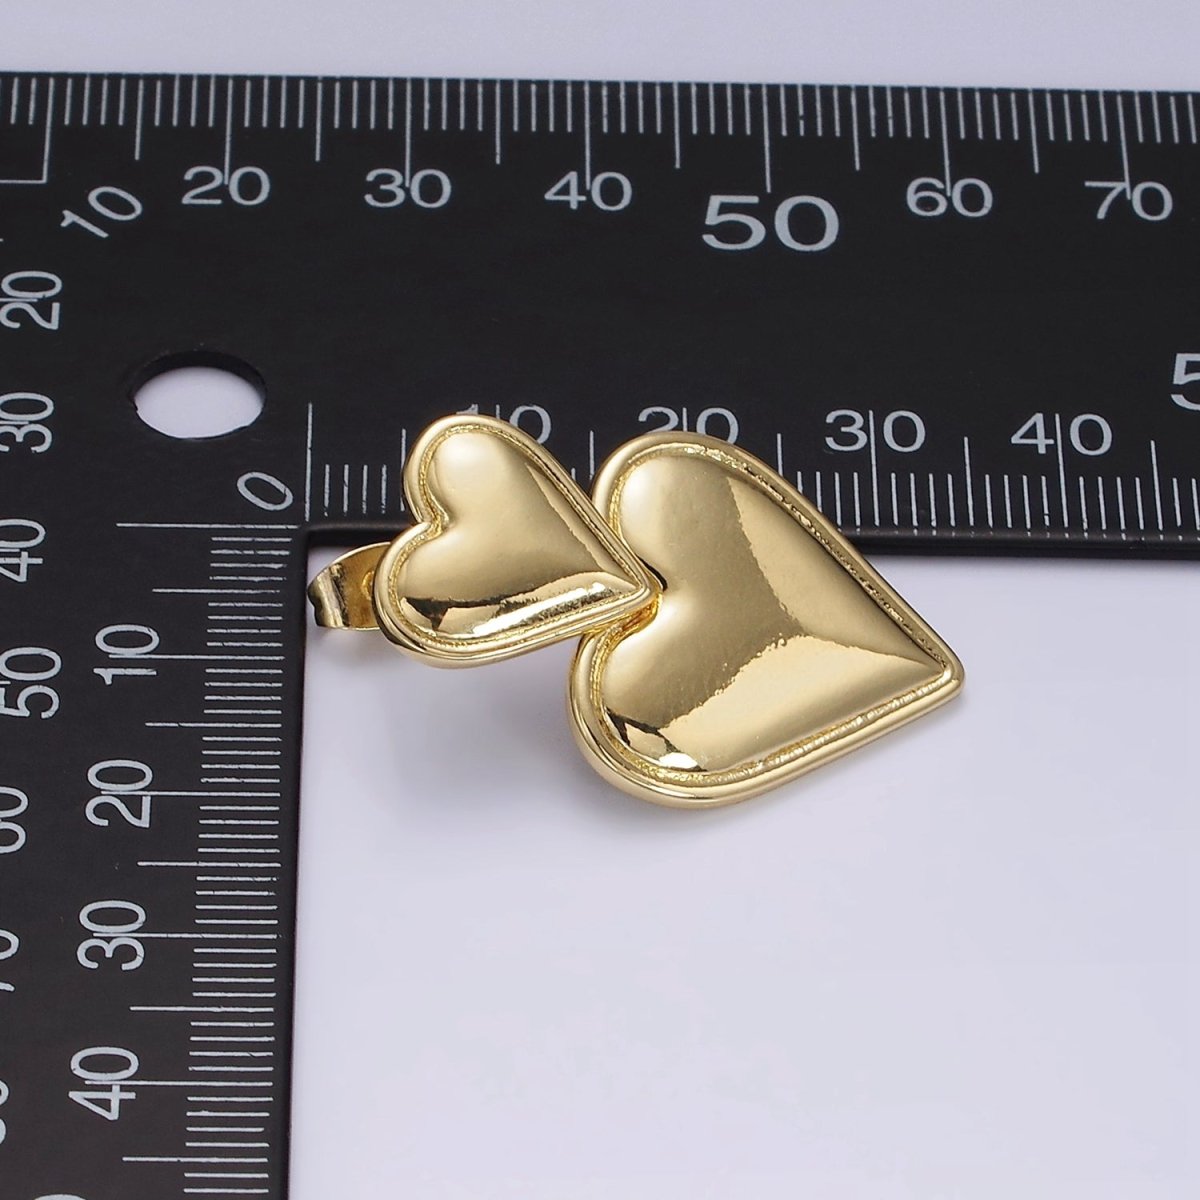 14K Gold Filled Double Heart Minimalist Drop Stud Earrings in Gold & Silver | AE344 - DLUXCA